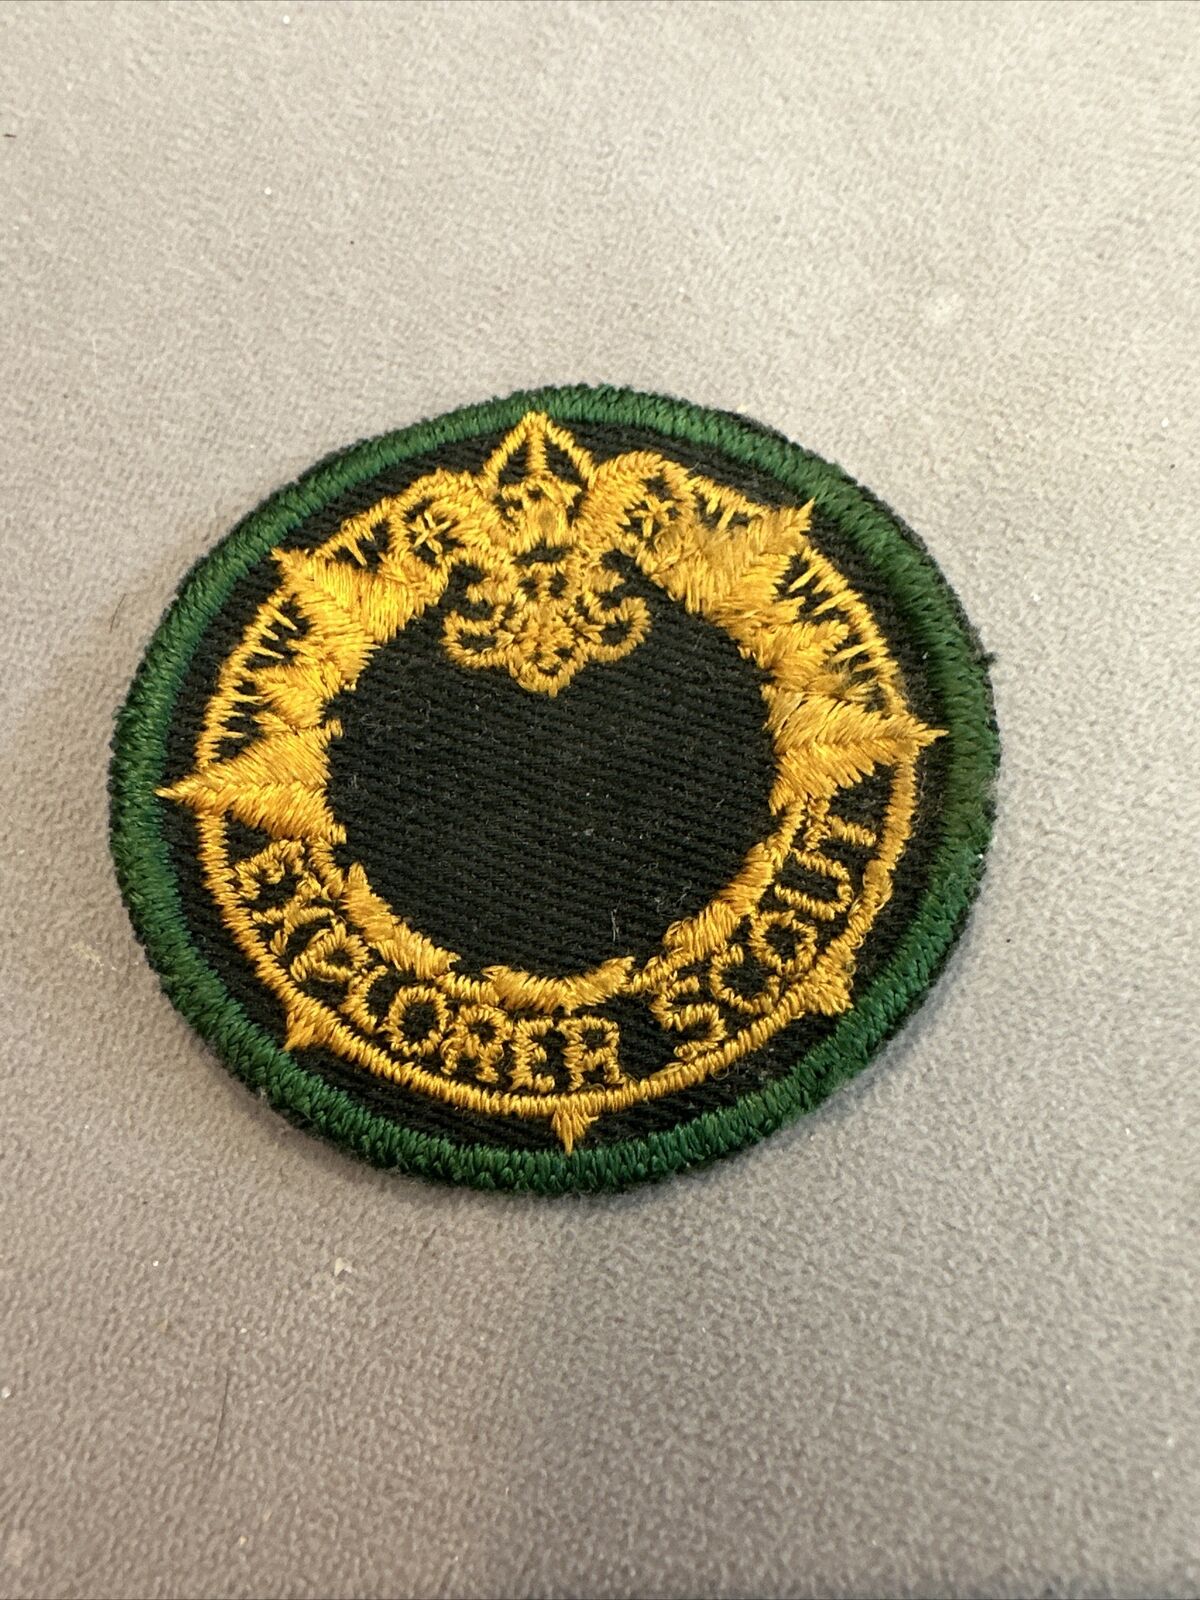 Boy Scout Explorer Apprentice Patch 1940’s